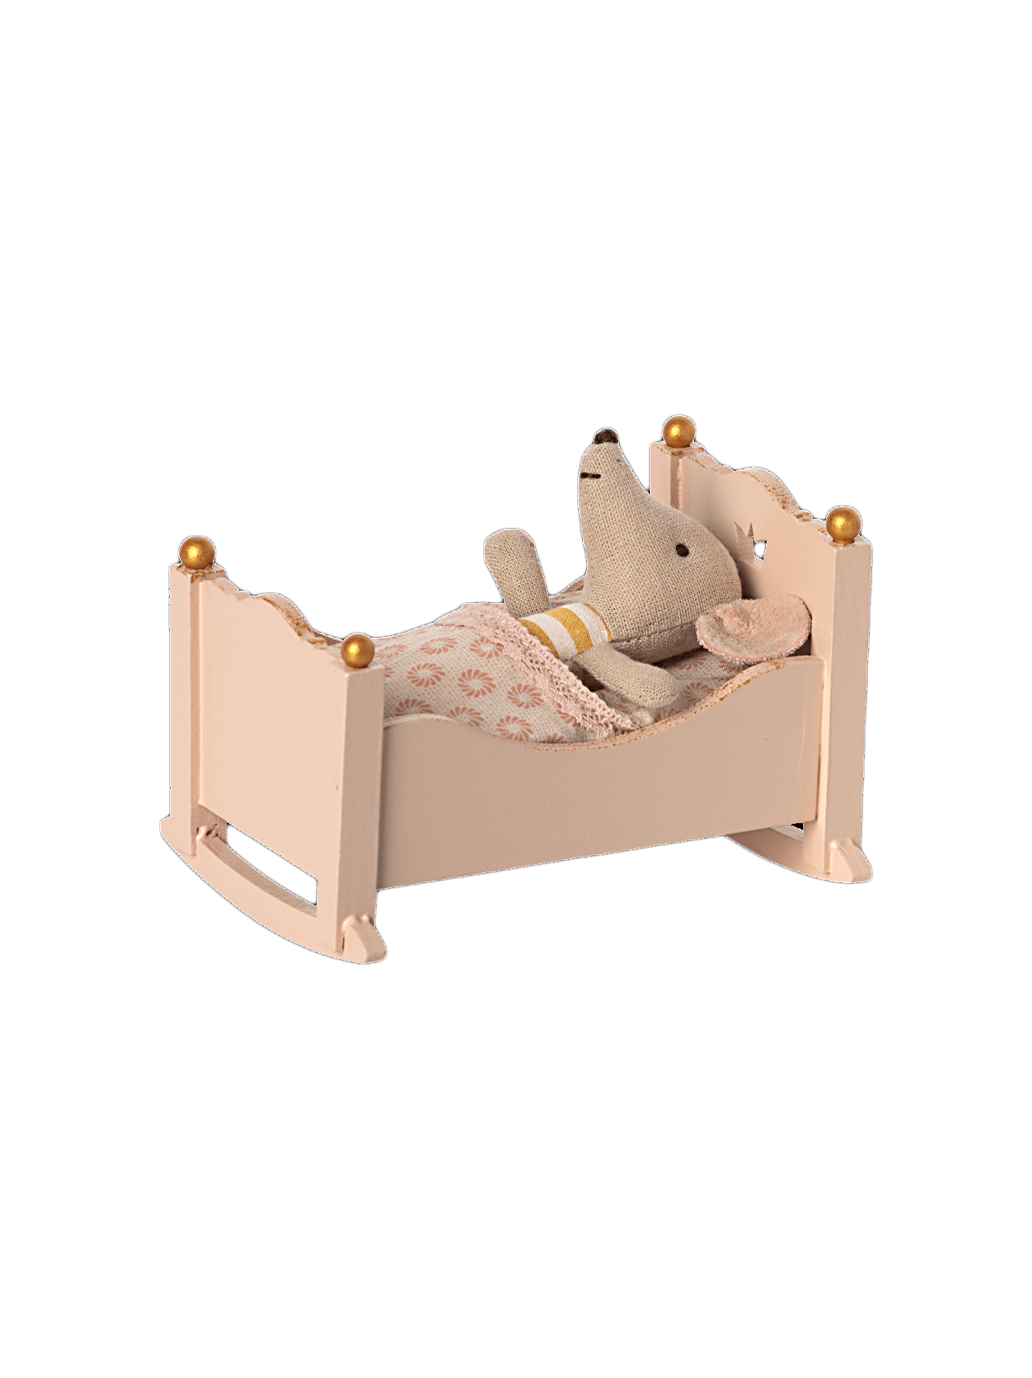 miniature cradle cradle